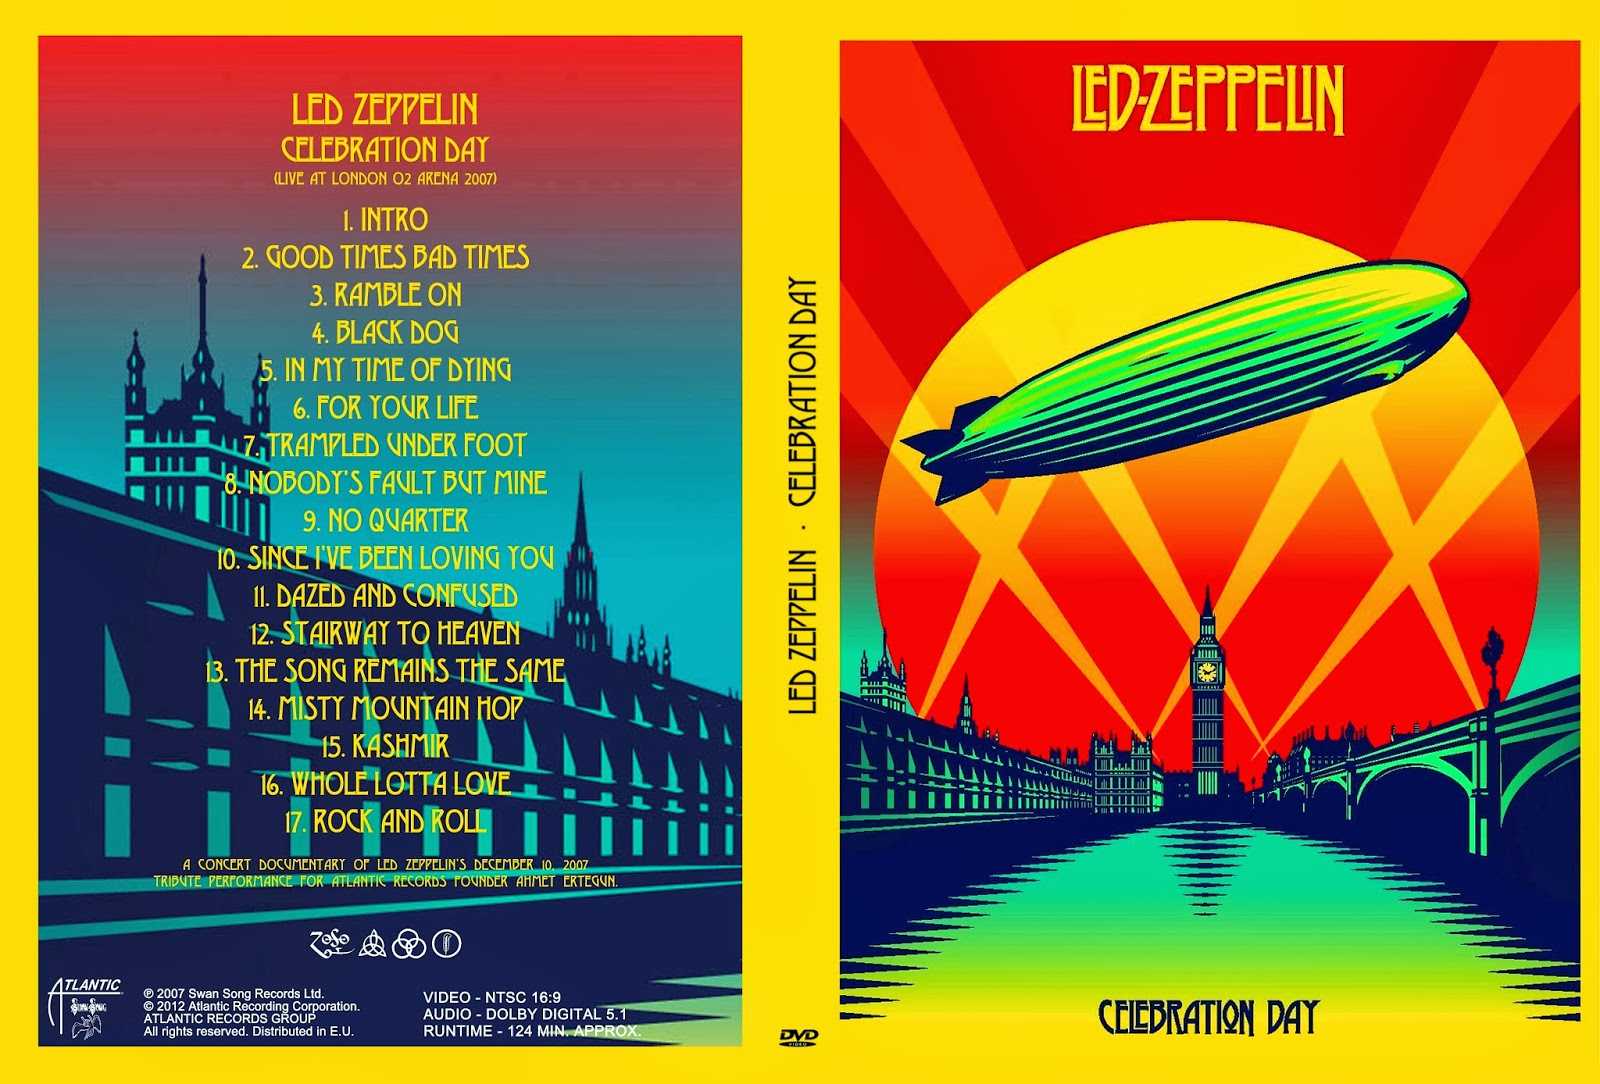 Led Zeppelin – Концерт на O2 Arena Воссоединение группы – 2007 10 декабря 2007 года Led Zeppelin организовывают один концерт на O2 Arena в Лондоне Это самое большое воссоединение в истории рока Слушать онлайн Смотреть видео Читать историю